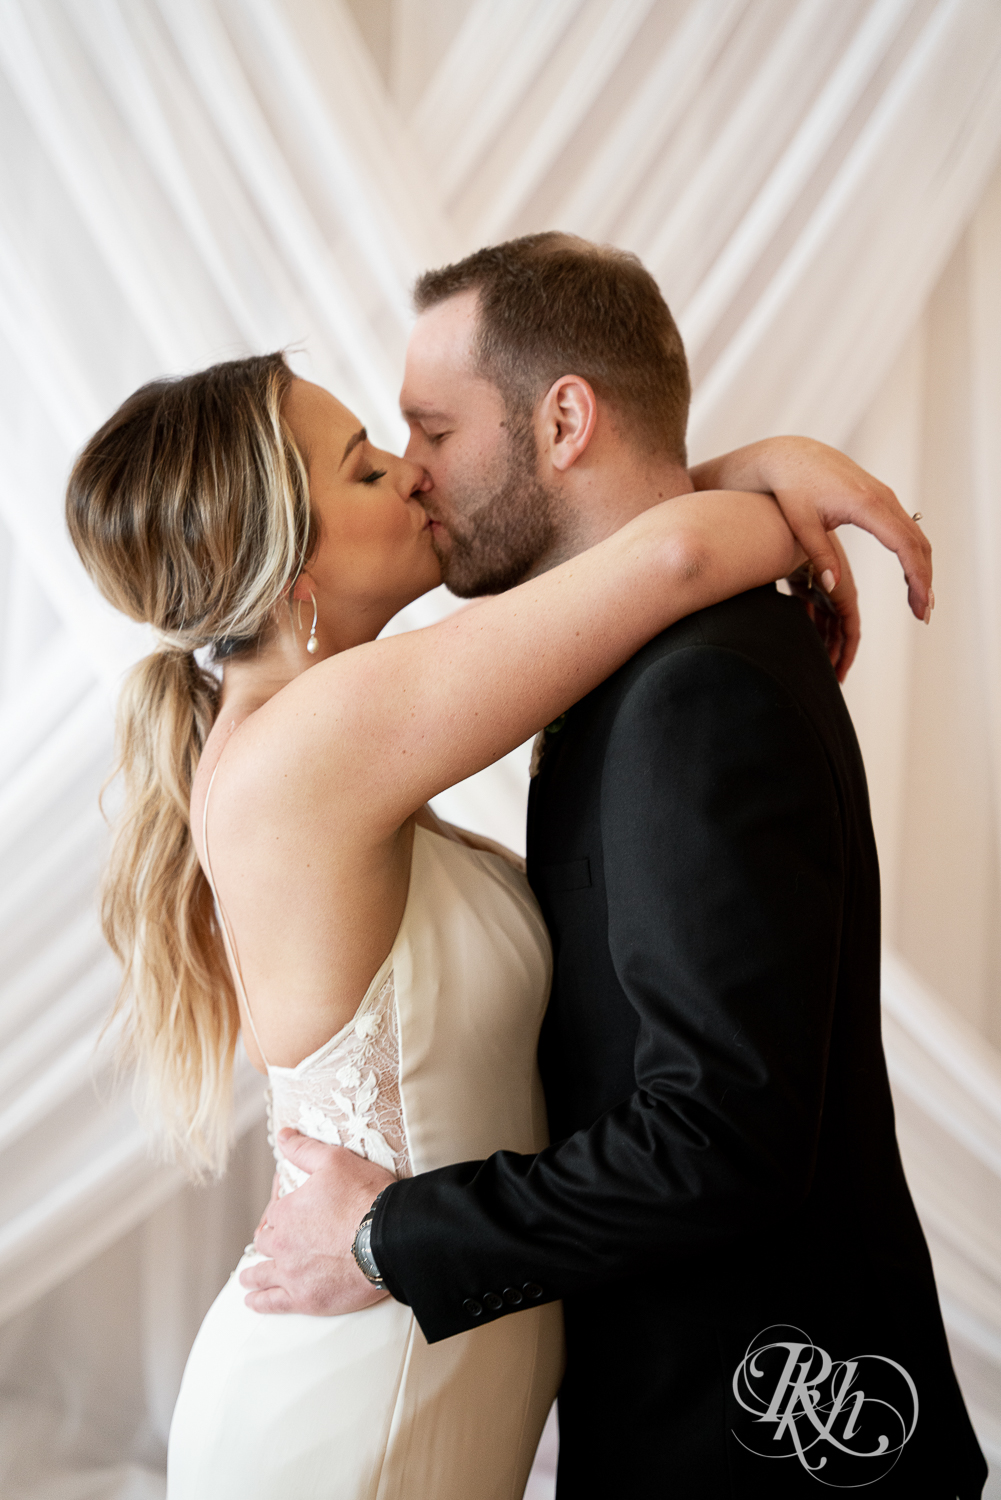 Bride and groom in black suit kiss under chandelier in the 3 Ten Event Center in Faribault, Minnesota.